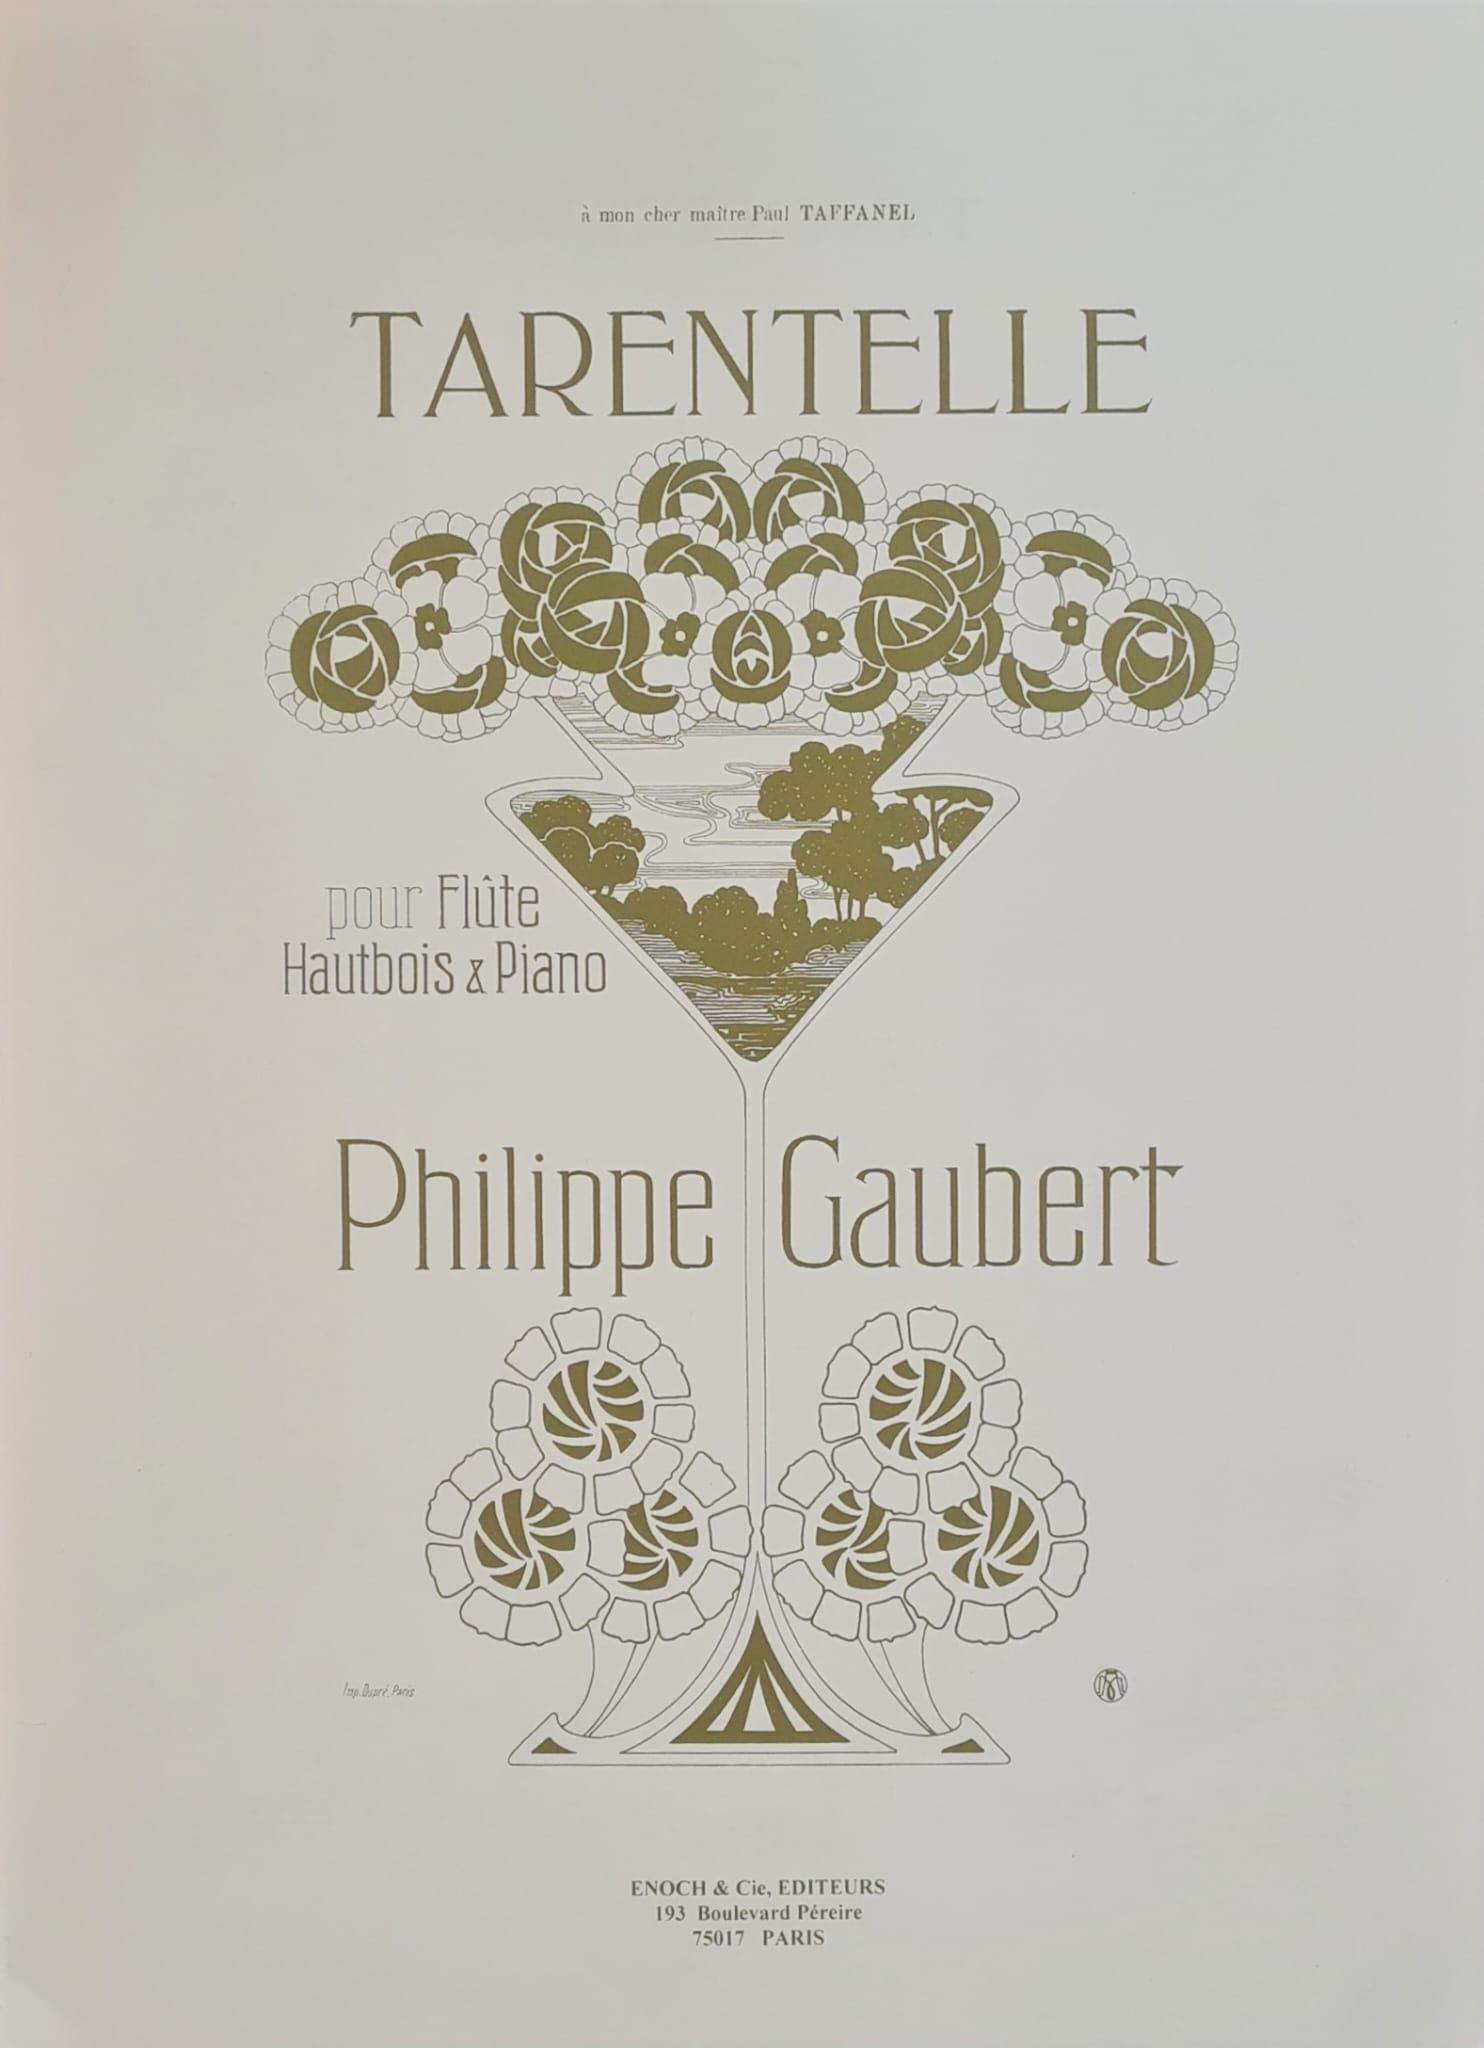 Tarentelle, Philippe GAUBERT | Suono Flauti